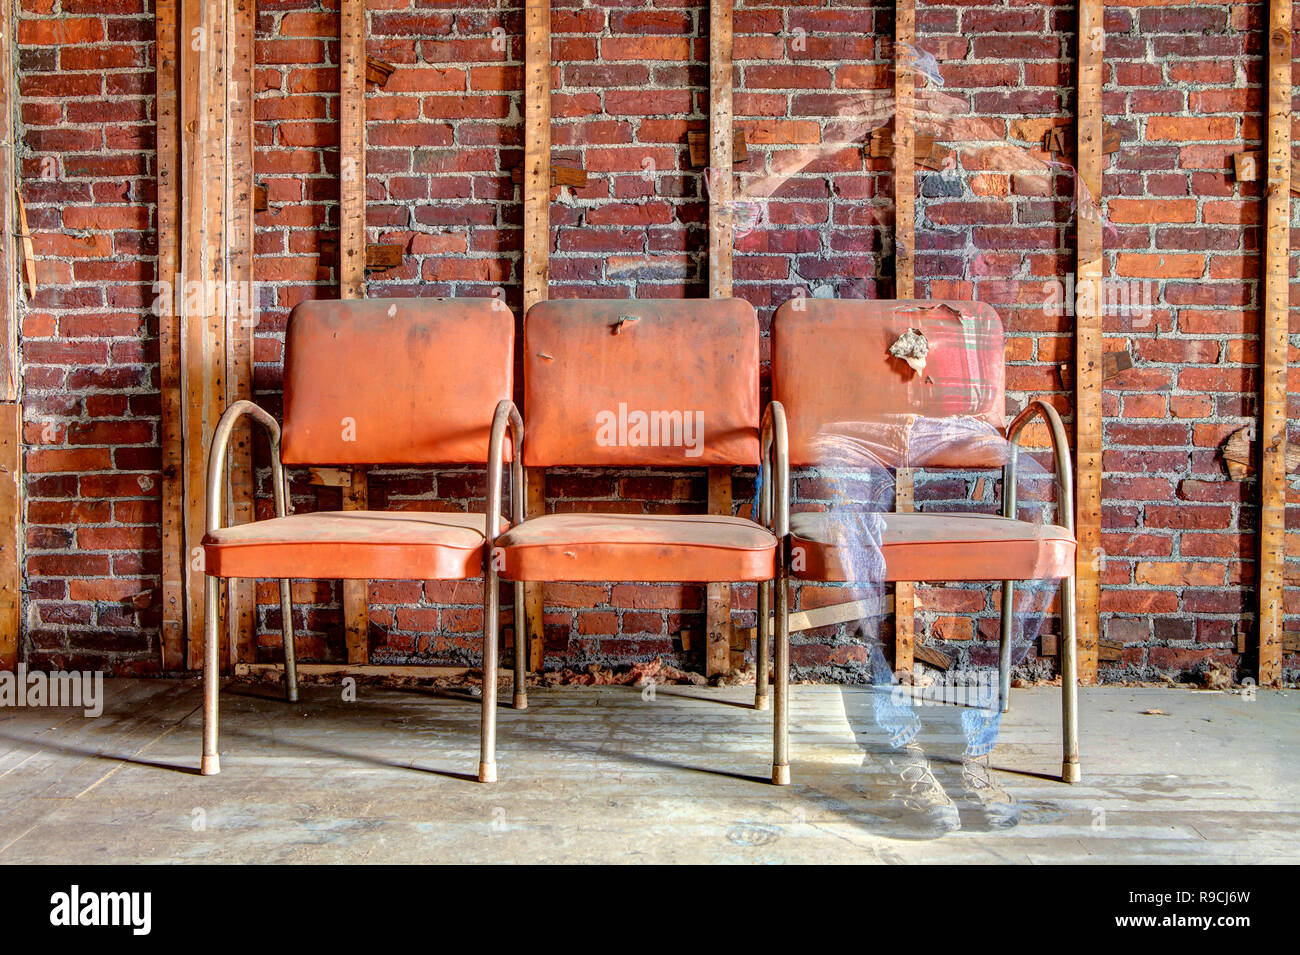 Gespenstisches Bild von einem Mann sitzt auf einem orange Stuhl schwinden sehen - durch den Körper in verlassenen Gebäude. Stockfoto